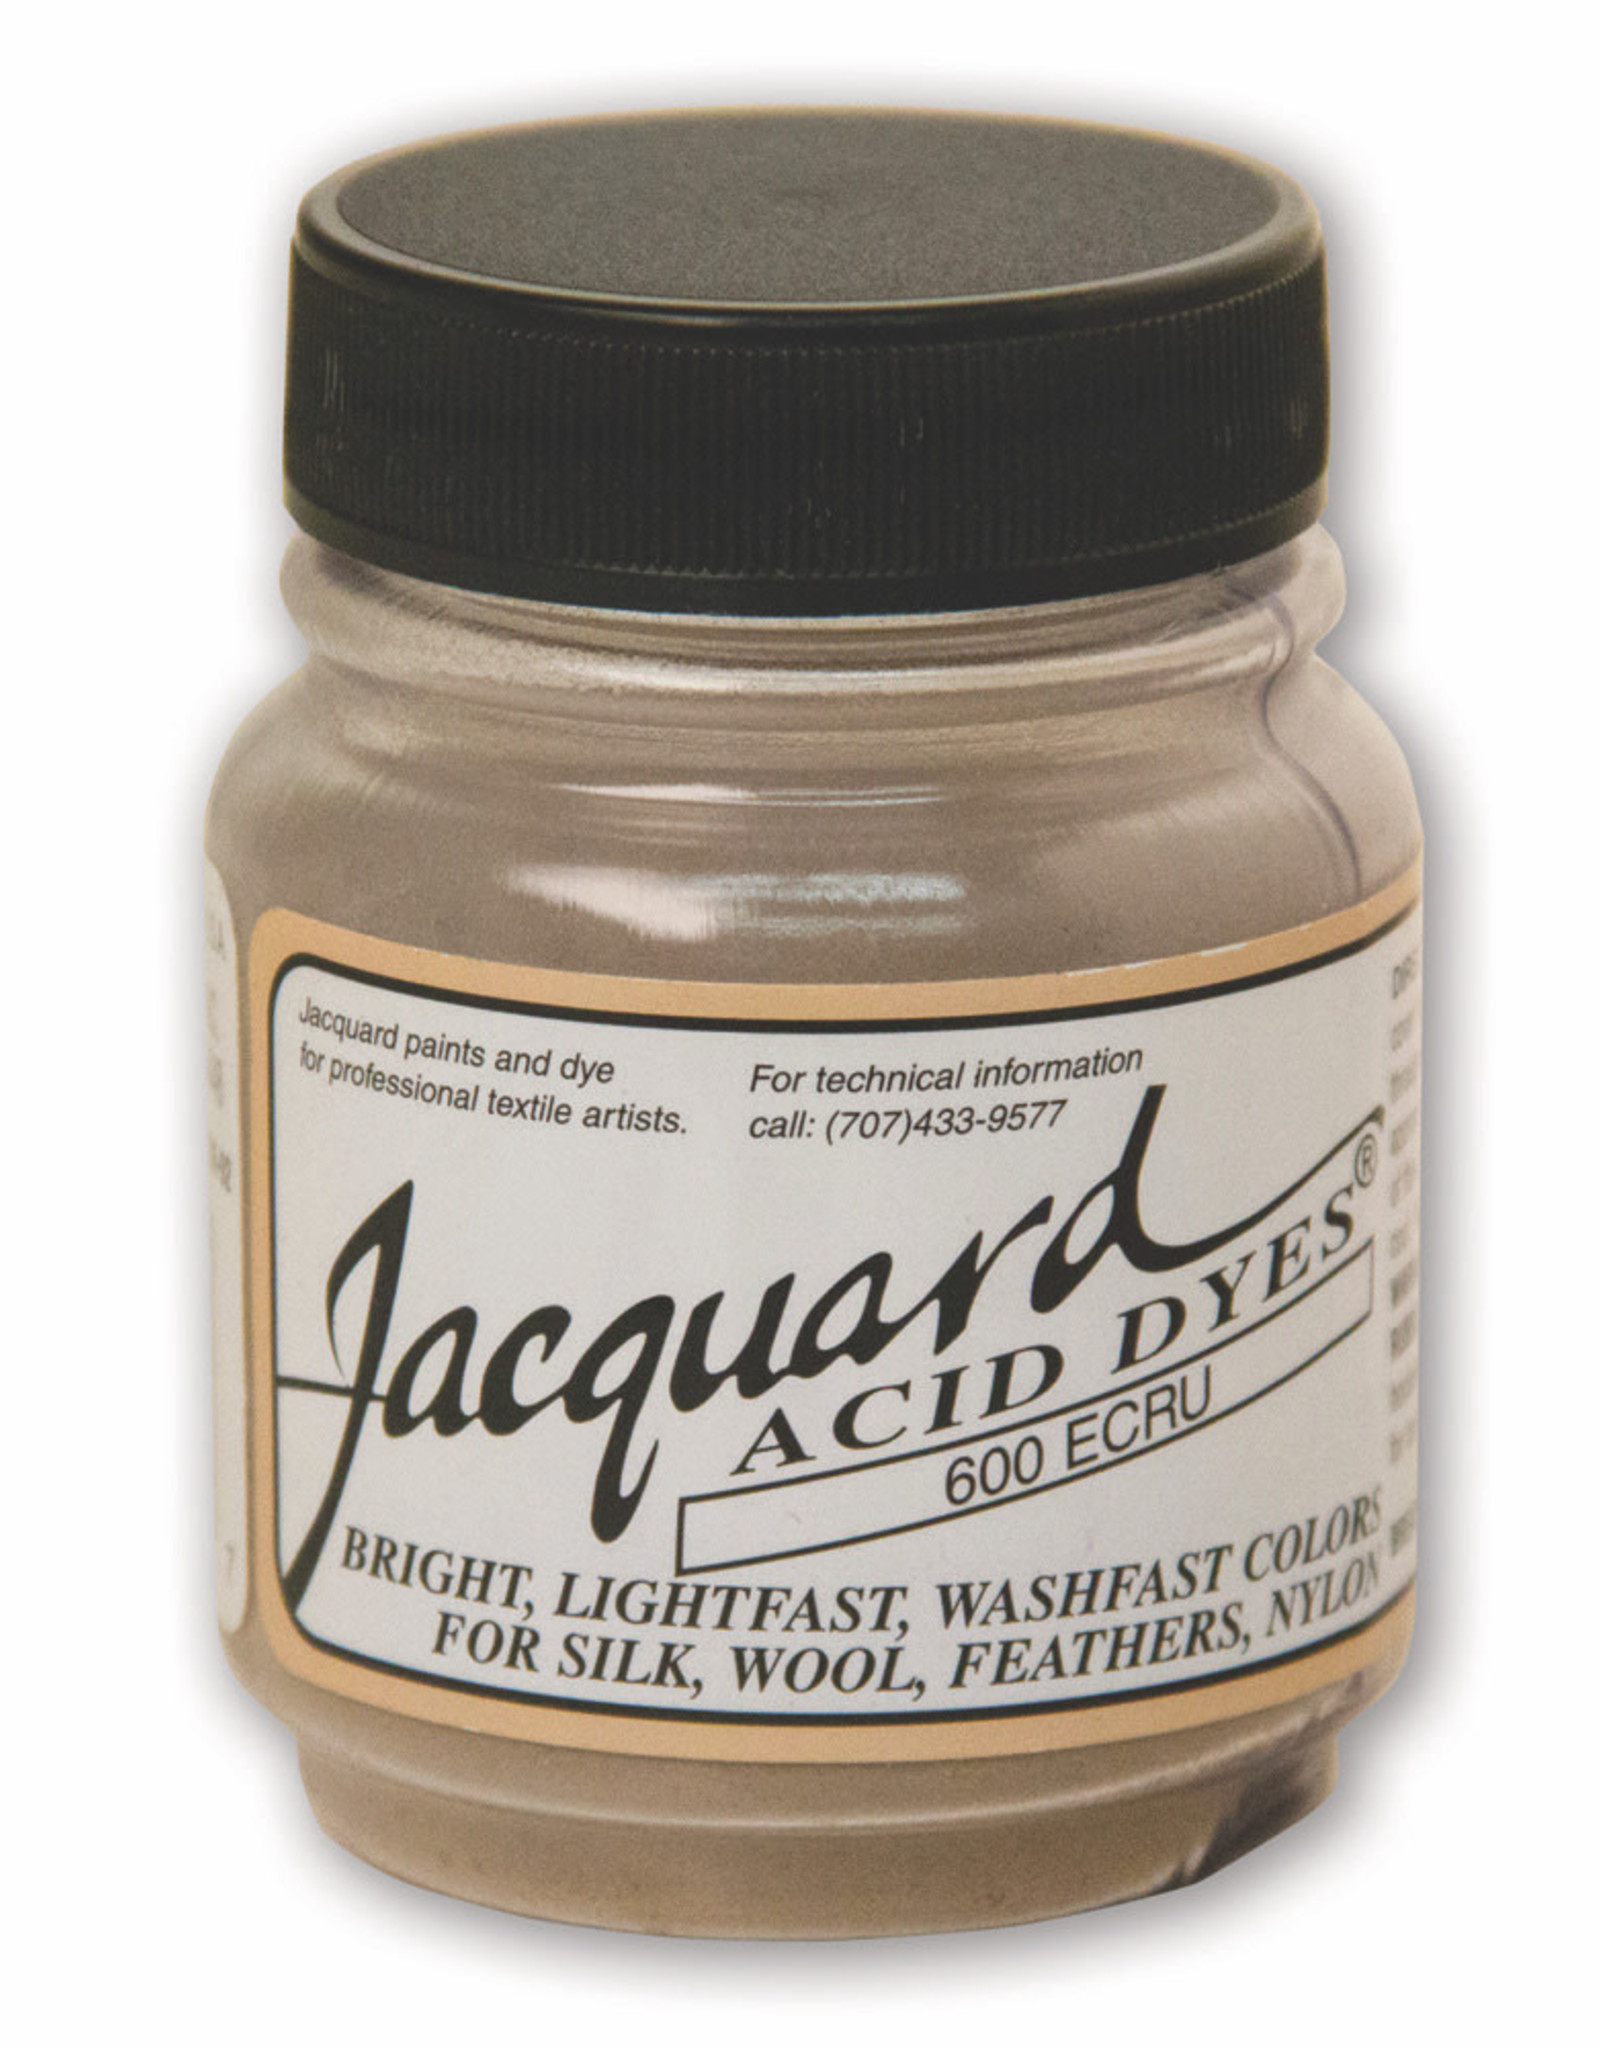 Jacquard Jacquard Acid Dye #600 Ecru 1/2oz